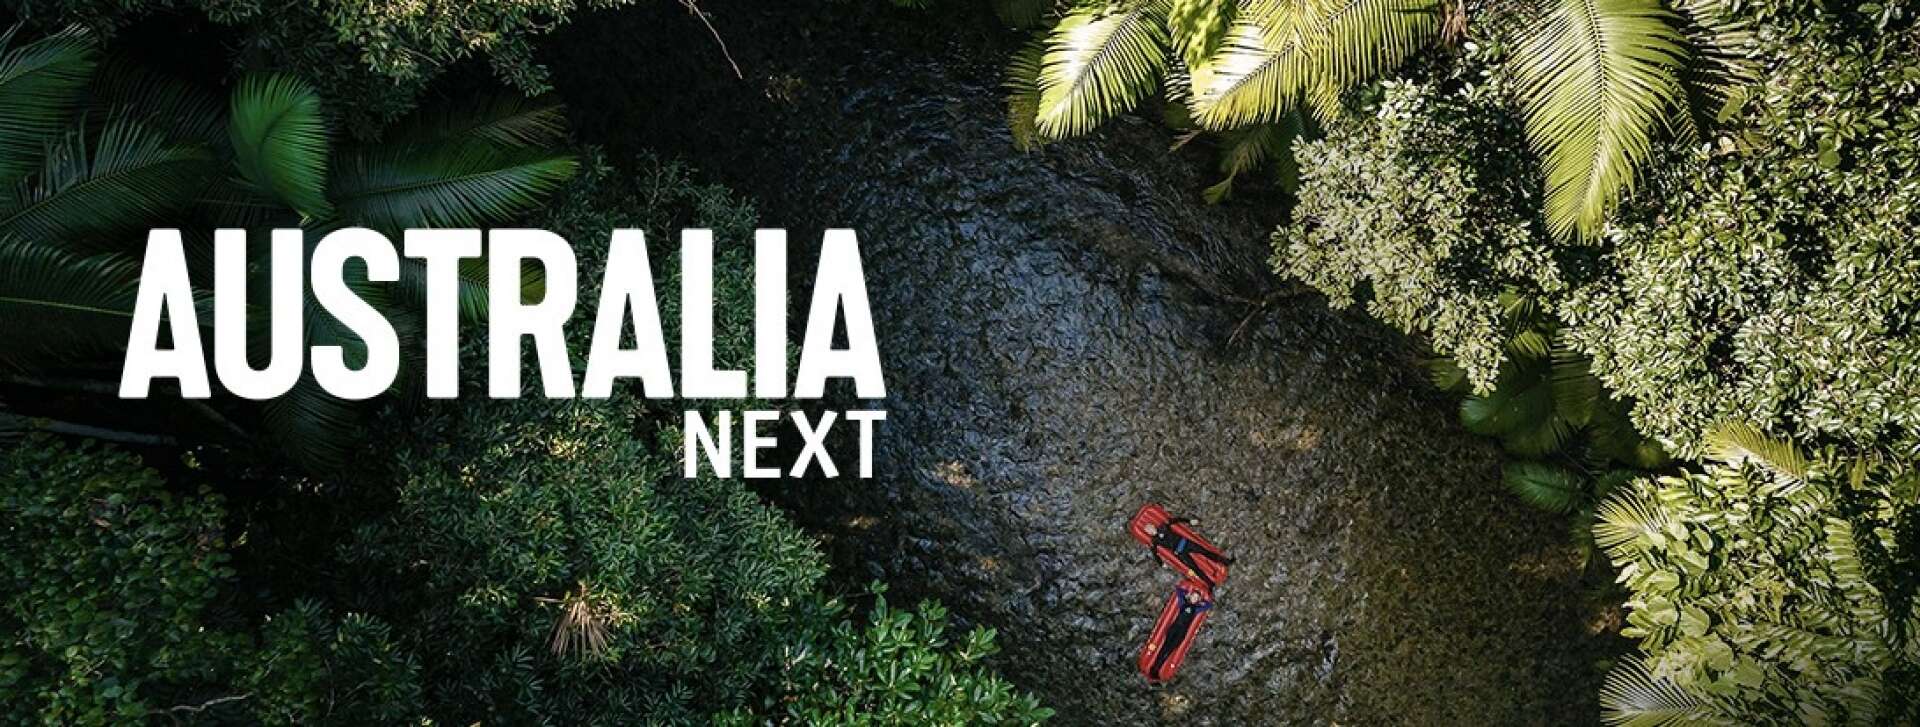 Australia Next magazine © Tourism Australia